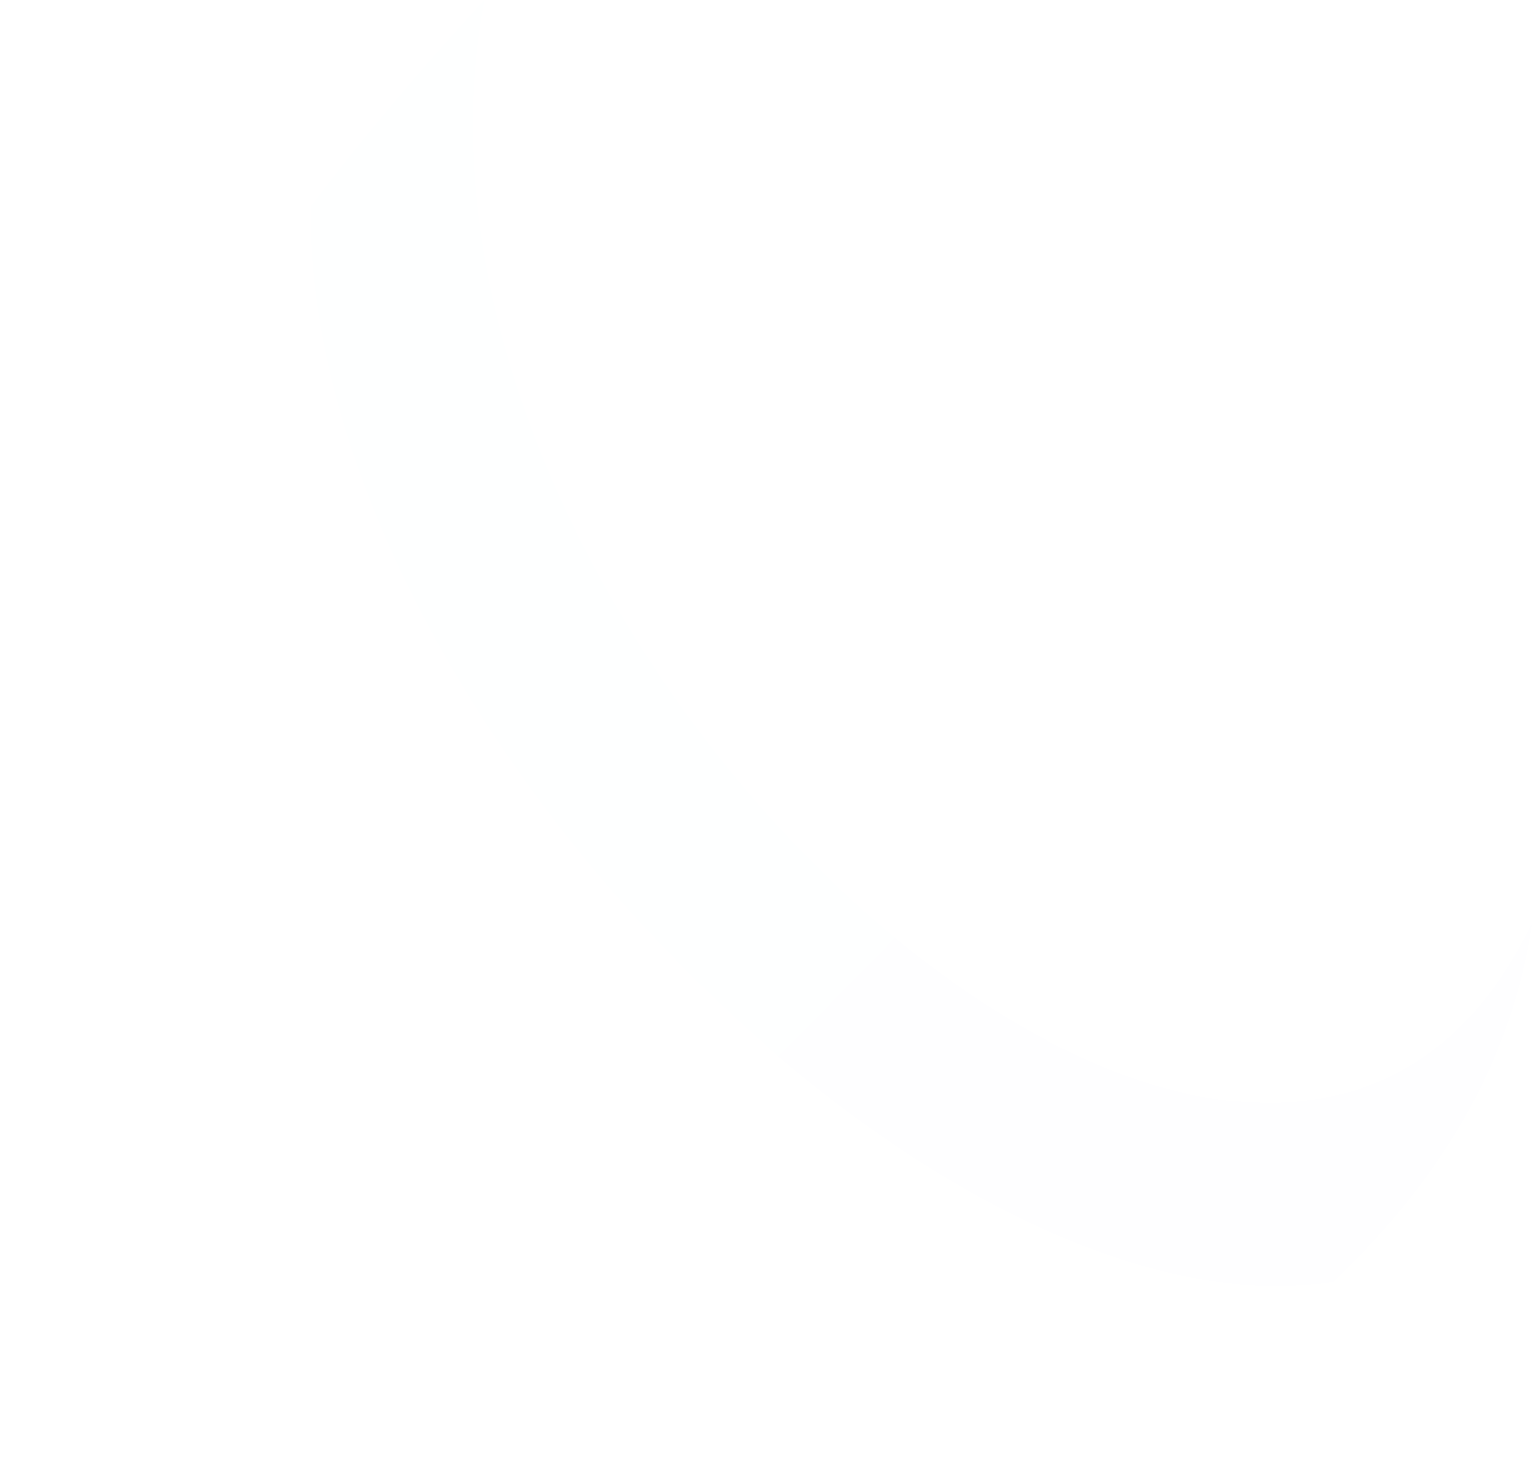 LifeStance Health Group logo for dark backgrounds (transparent PNG)